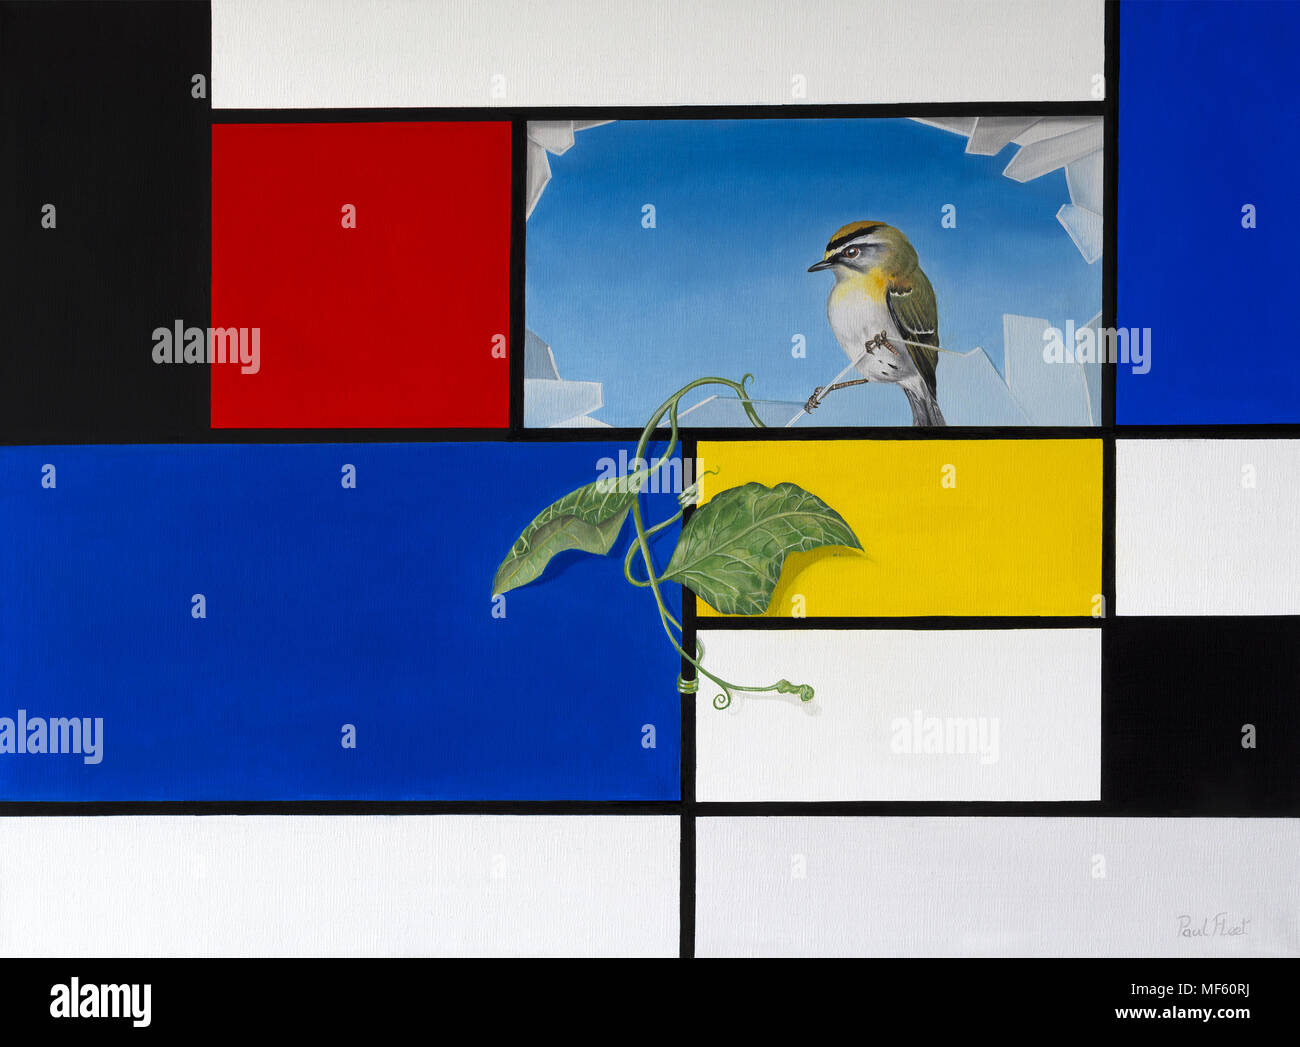 Huile originale sur toile peinture représentant un fond style Mondrian avec volet cassé révélant la pendaison de lierre et un petit oiseau Banque D'Images